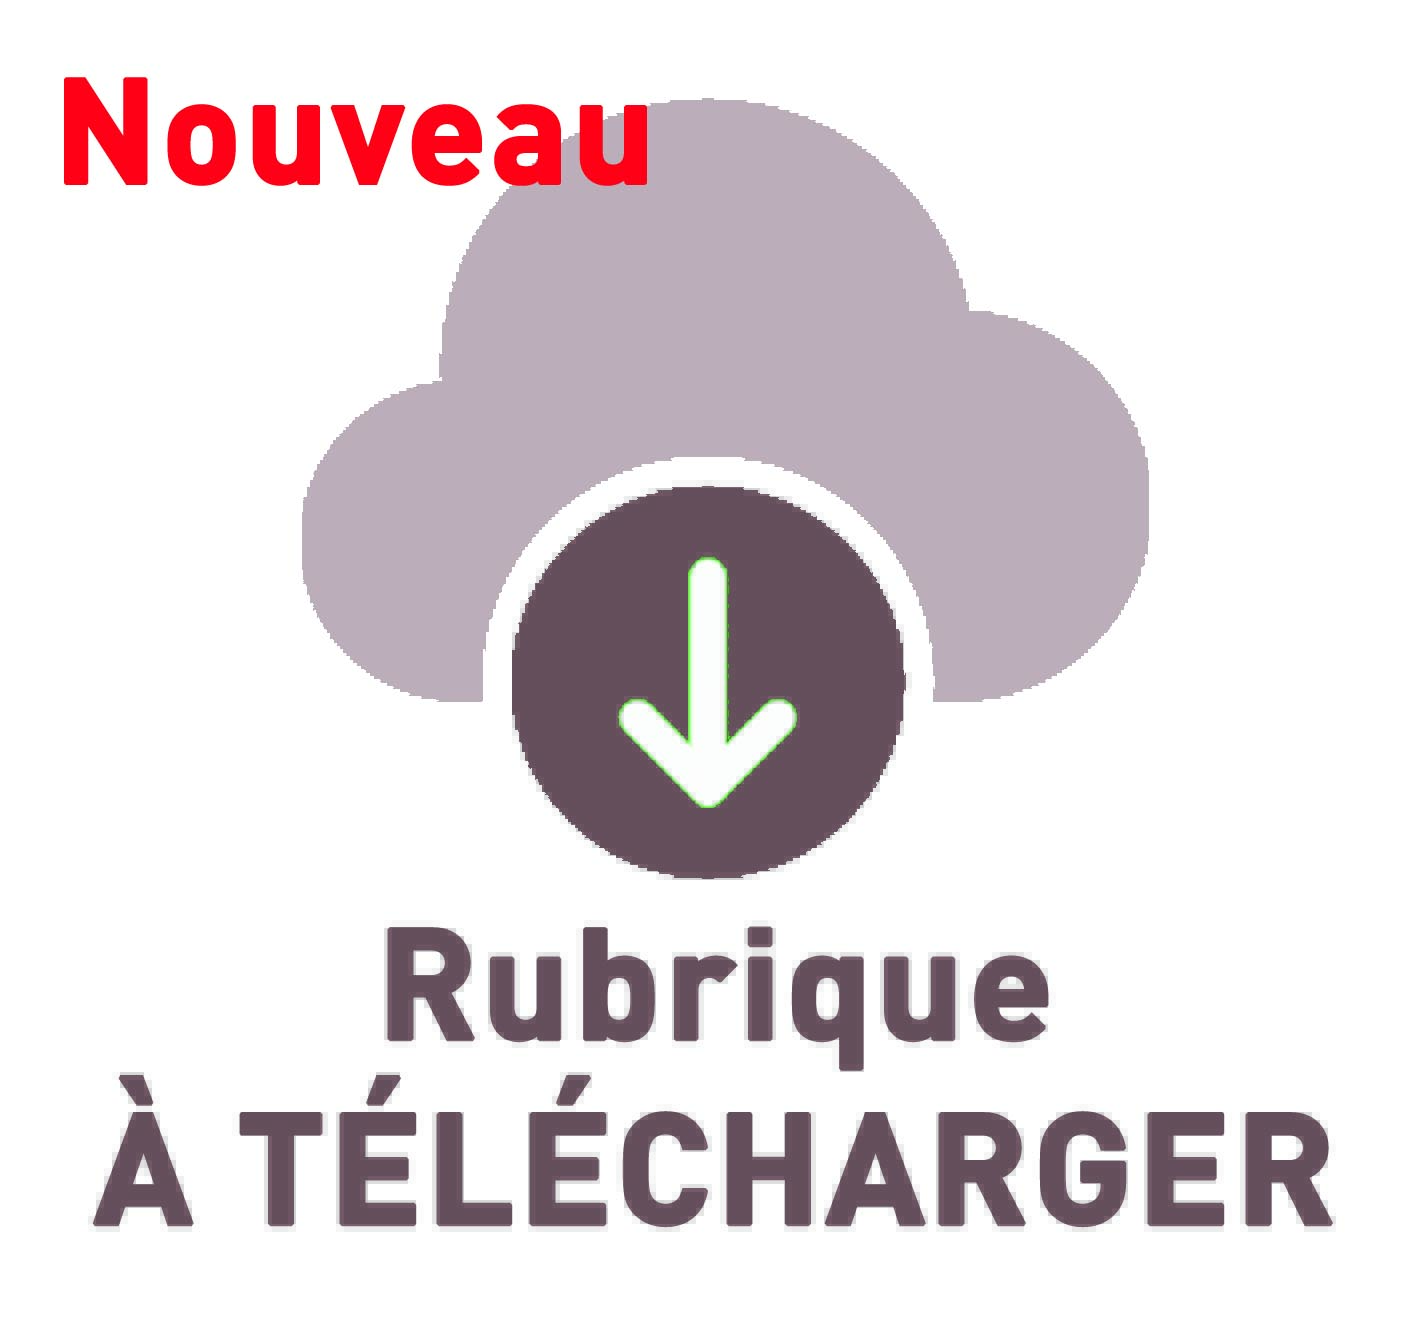 Rubrique A TELECHARGER